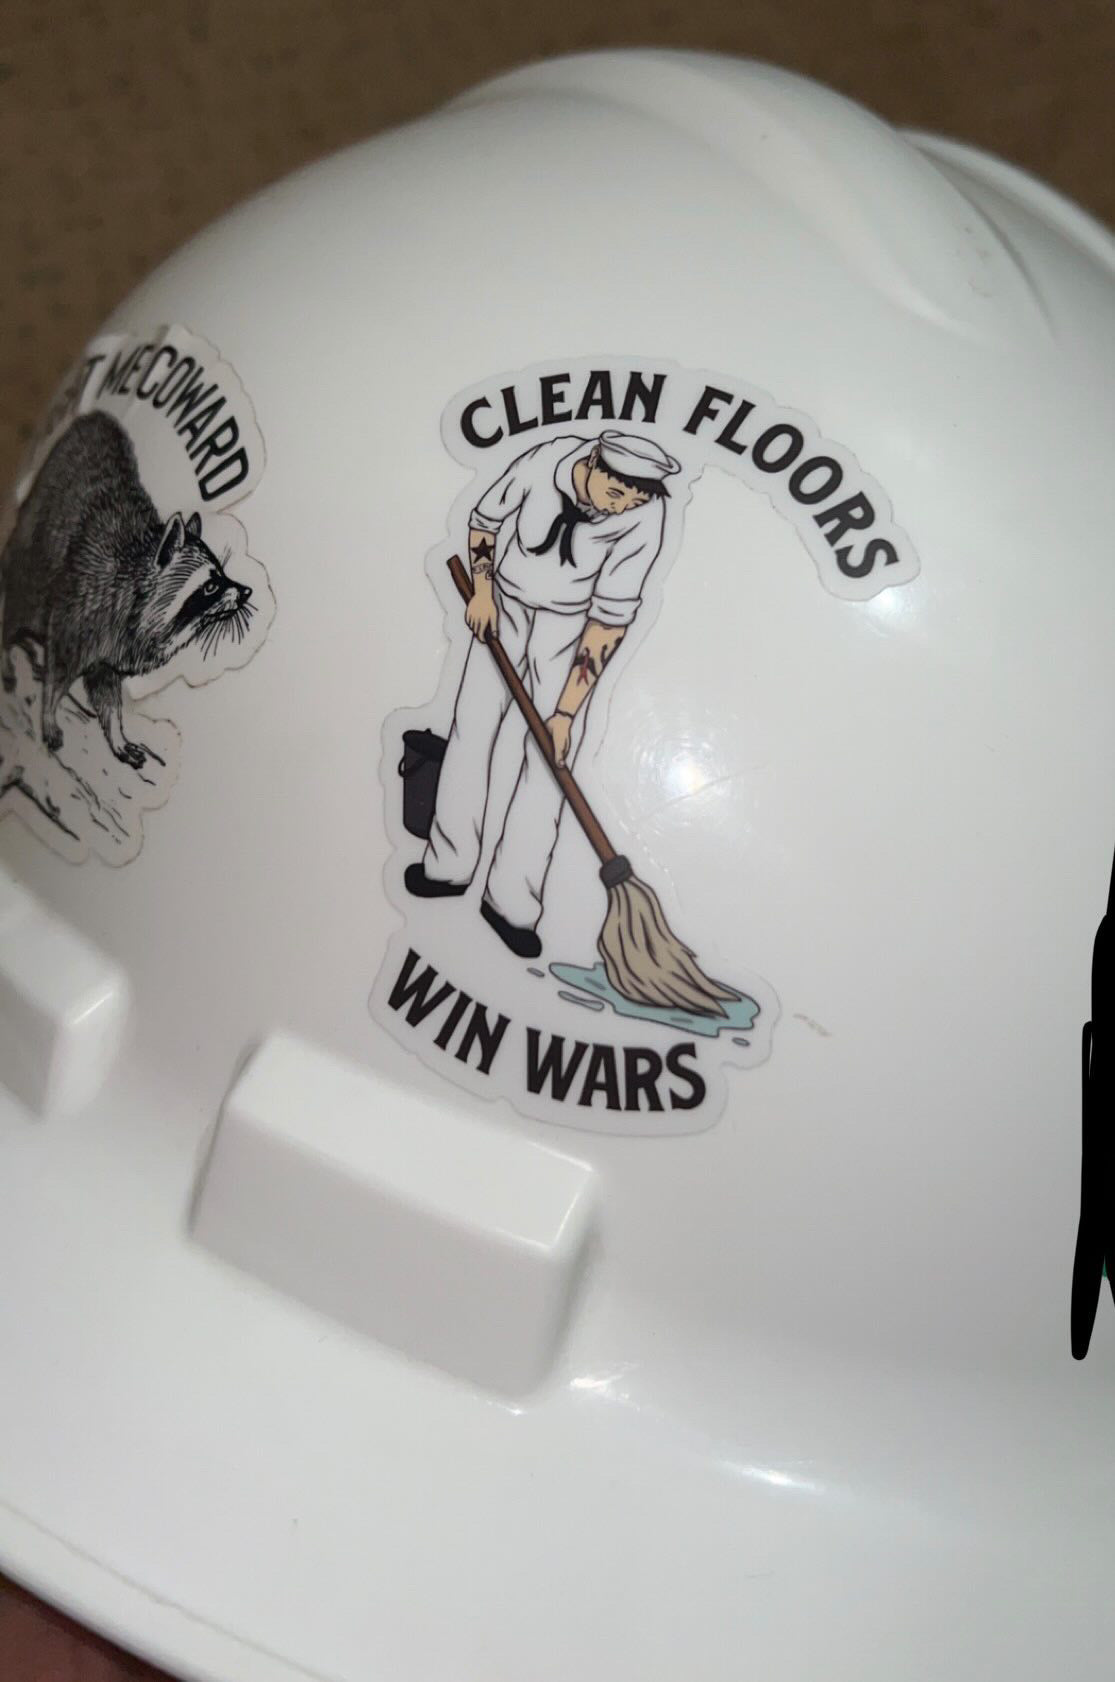 Clean Floors Win Wars Sticker